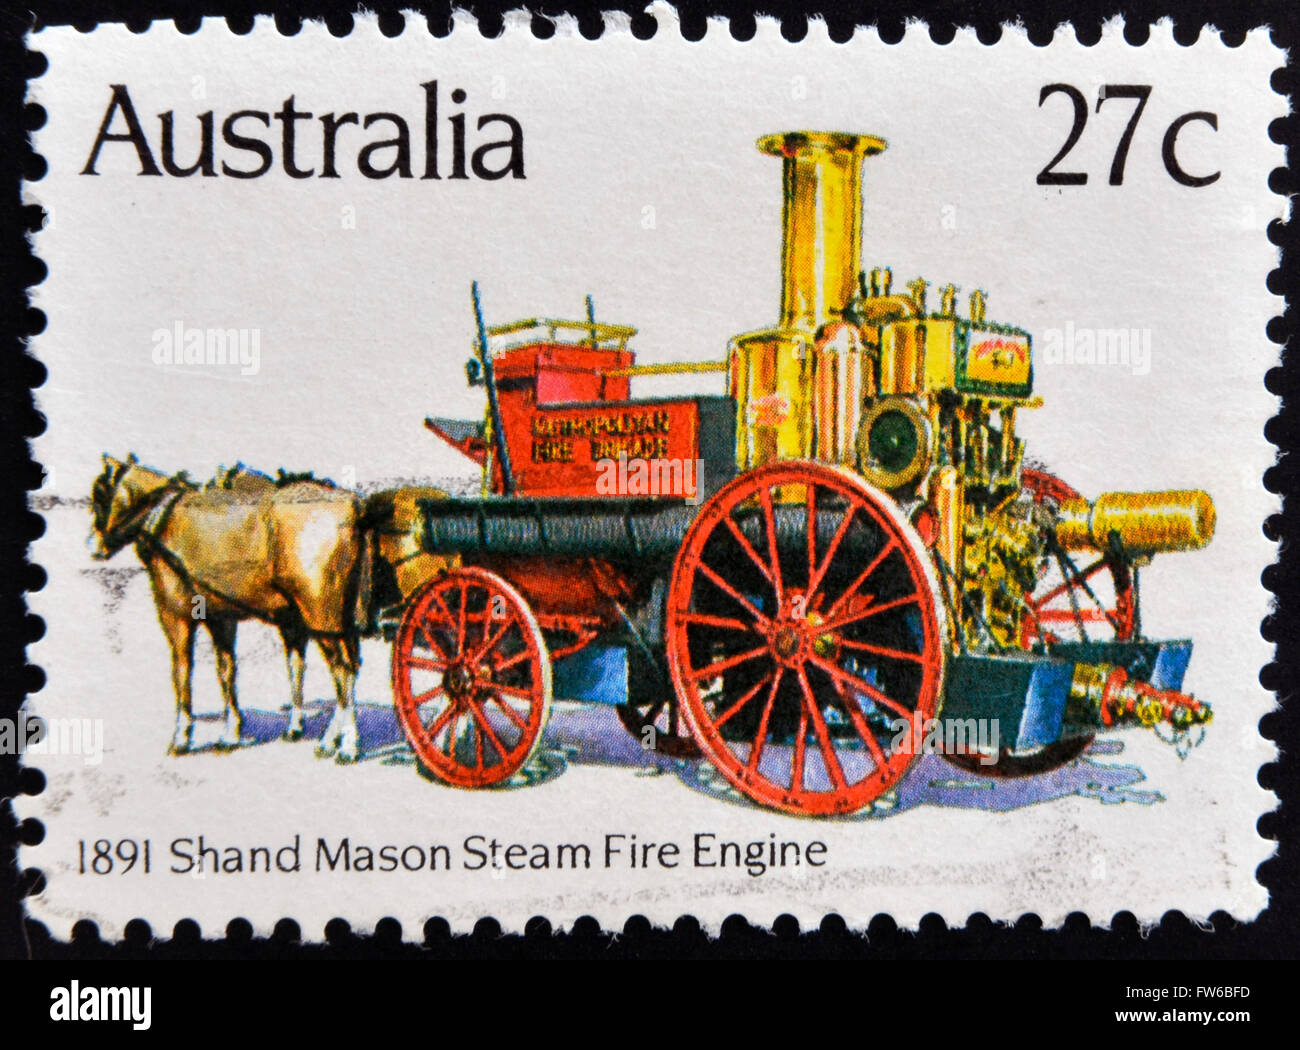 Australien - ca. 1983: Eine Briefmarke gedruckt in Australien zeigt 1891 Shand Mason Feuer Dampflokomotive, ca. 1983 Stockfoto